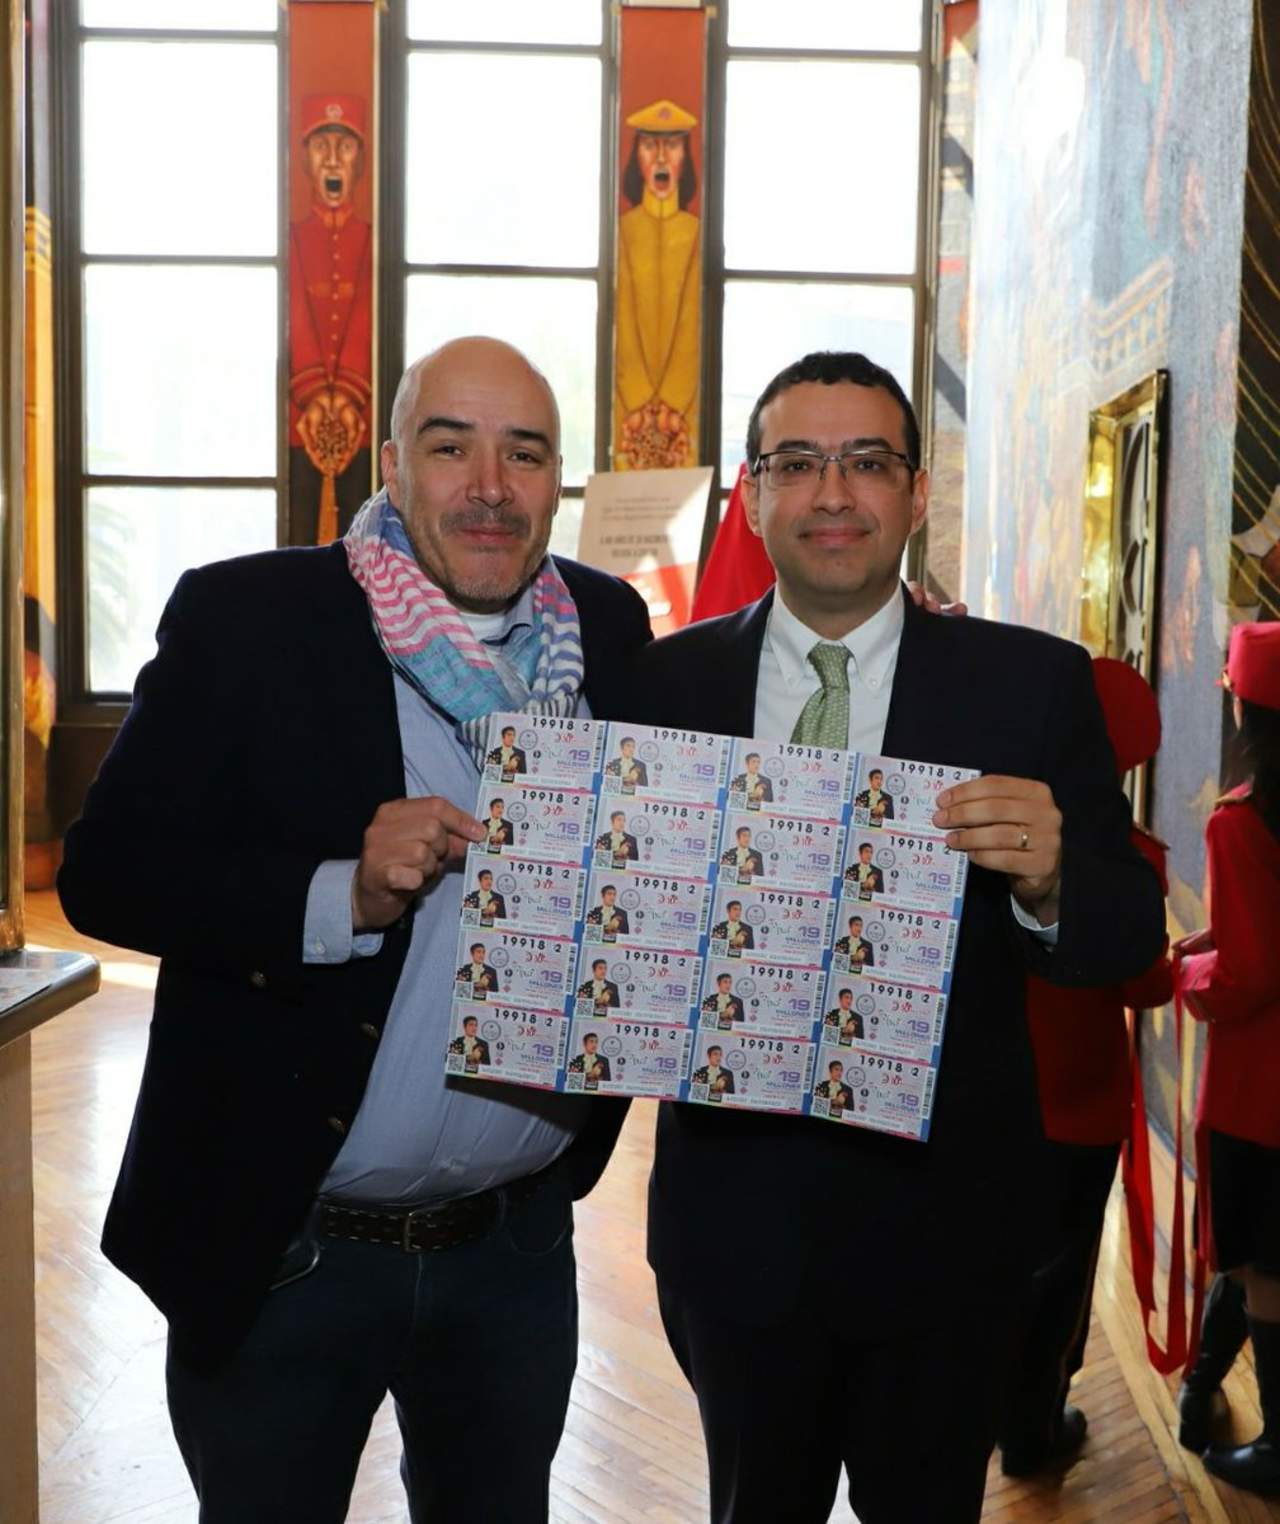 Su hijo, Luis Aguilar Doblado, fue el encargado de presentar este billete conmemorativo, que emite la Lotería Nacional para su sorteo del 7 de marzo. (TWITTER)